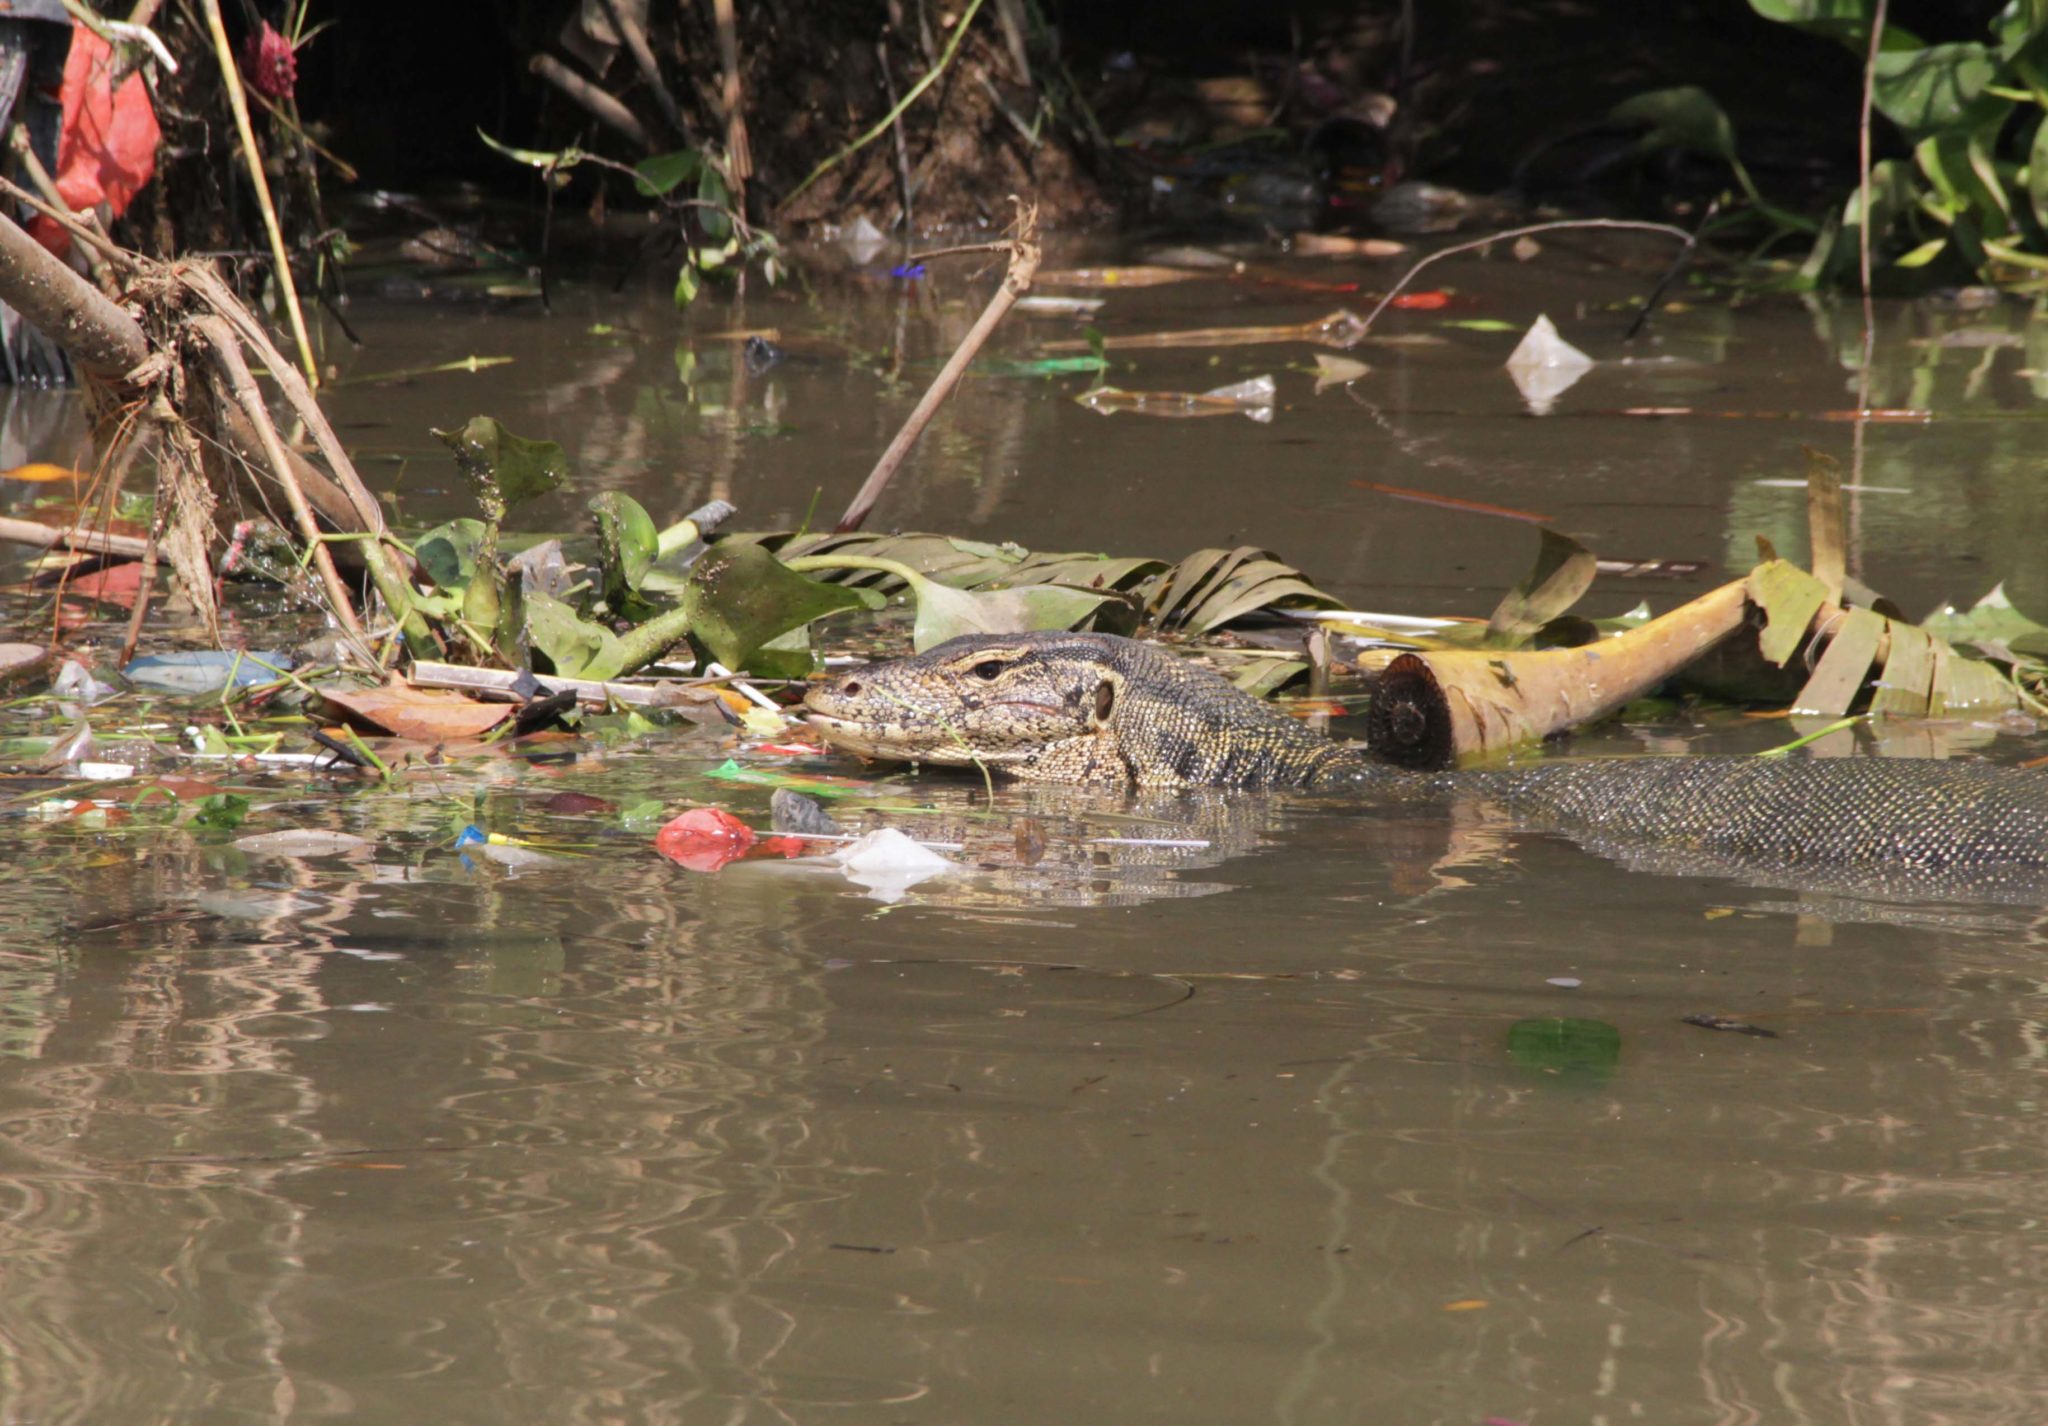 Seekor biawak (Varanus) muncul diantara timbulan sampah yang mencemari Kali Adem, Penjaringan, Jakarta Utara. Foto: Falahi Mubarok/Mongabay Indonesia